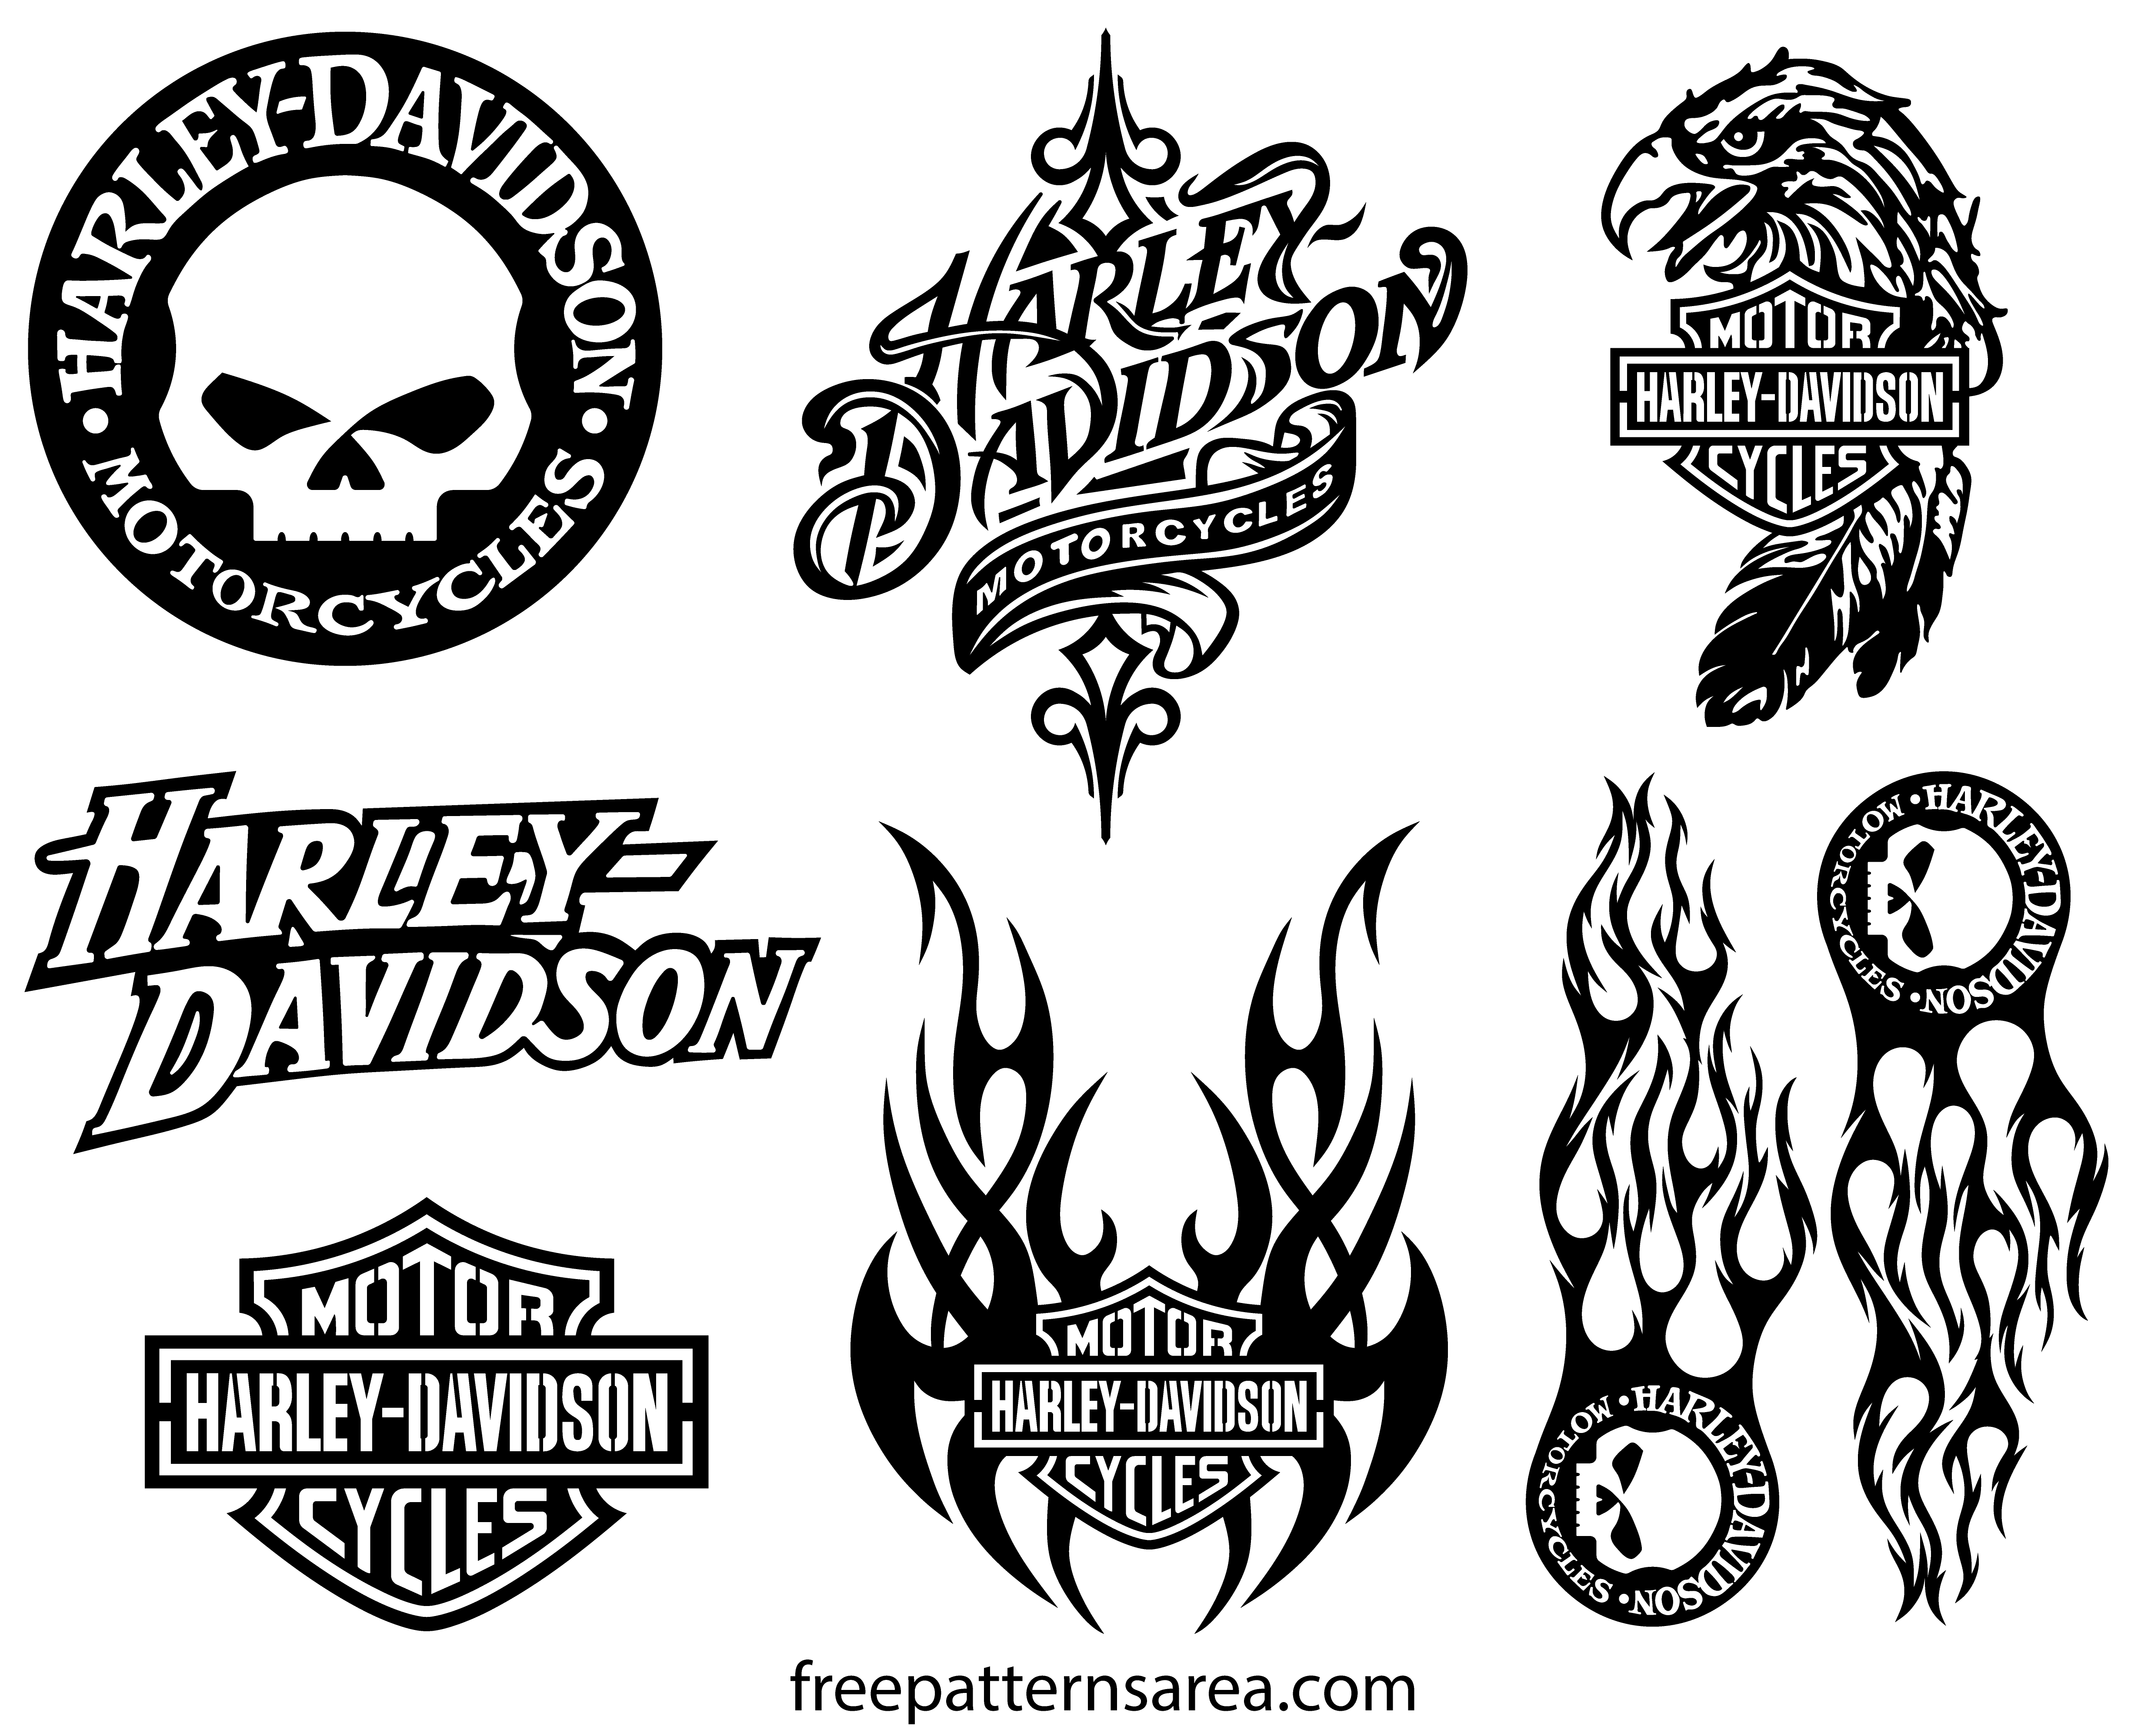 harley davidson logo outline